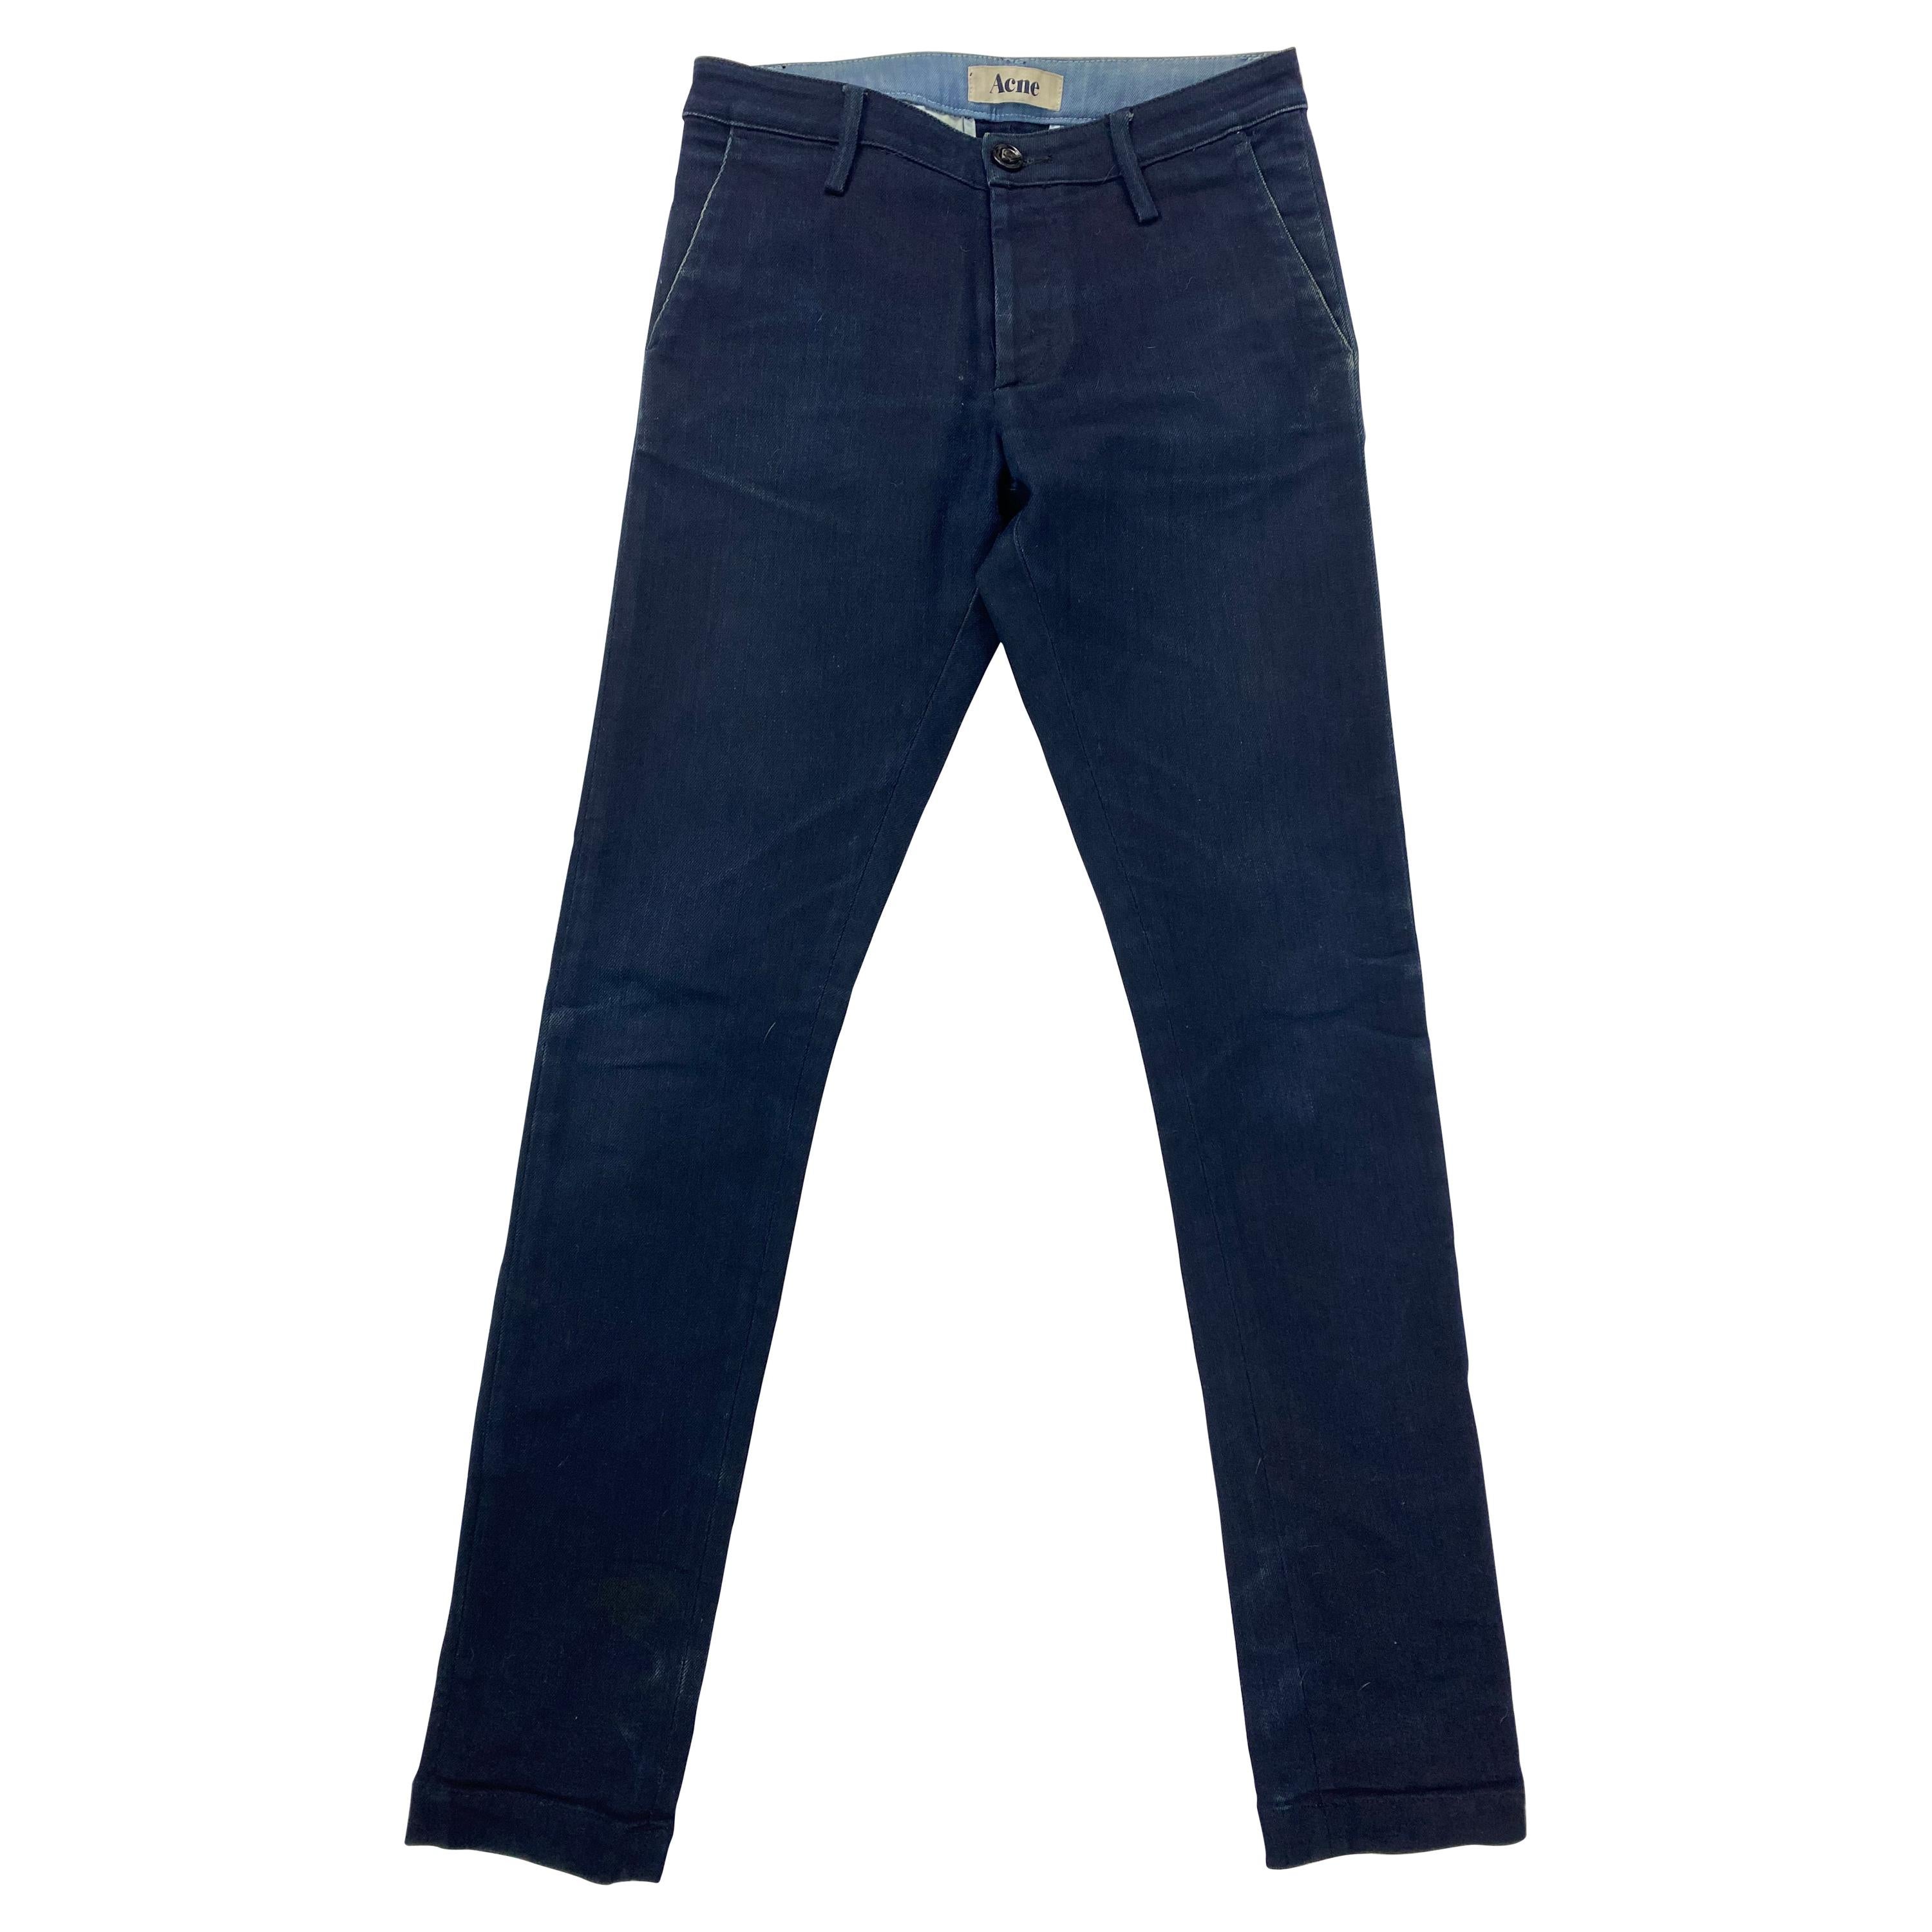 Acne Joy Sharp Blue Denim Jeans Pants, Size 25/32 For Sale